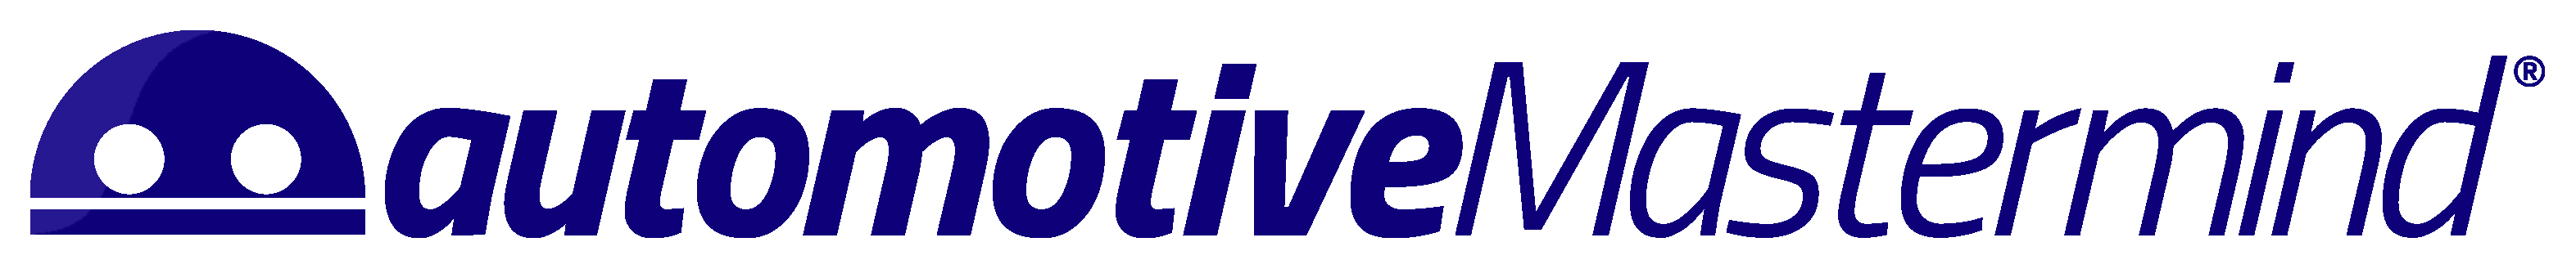 automotiveMastermind logo